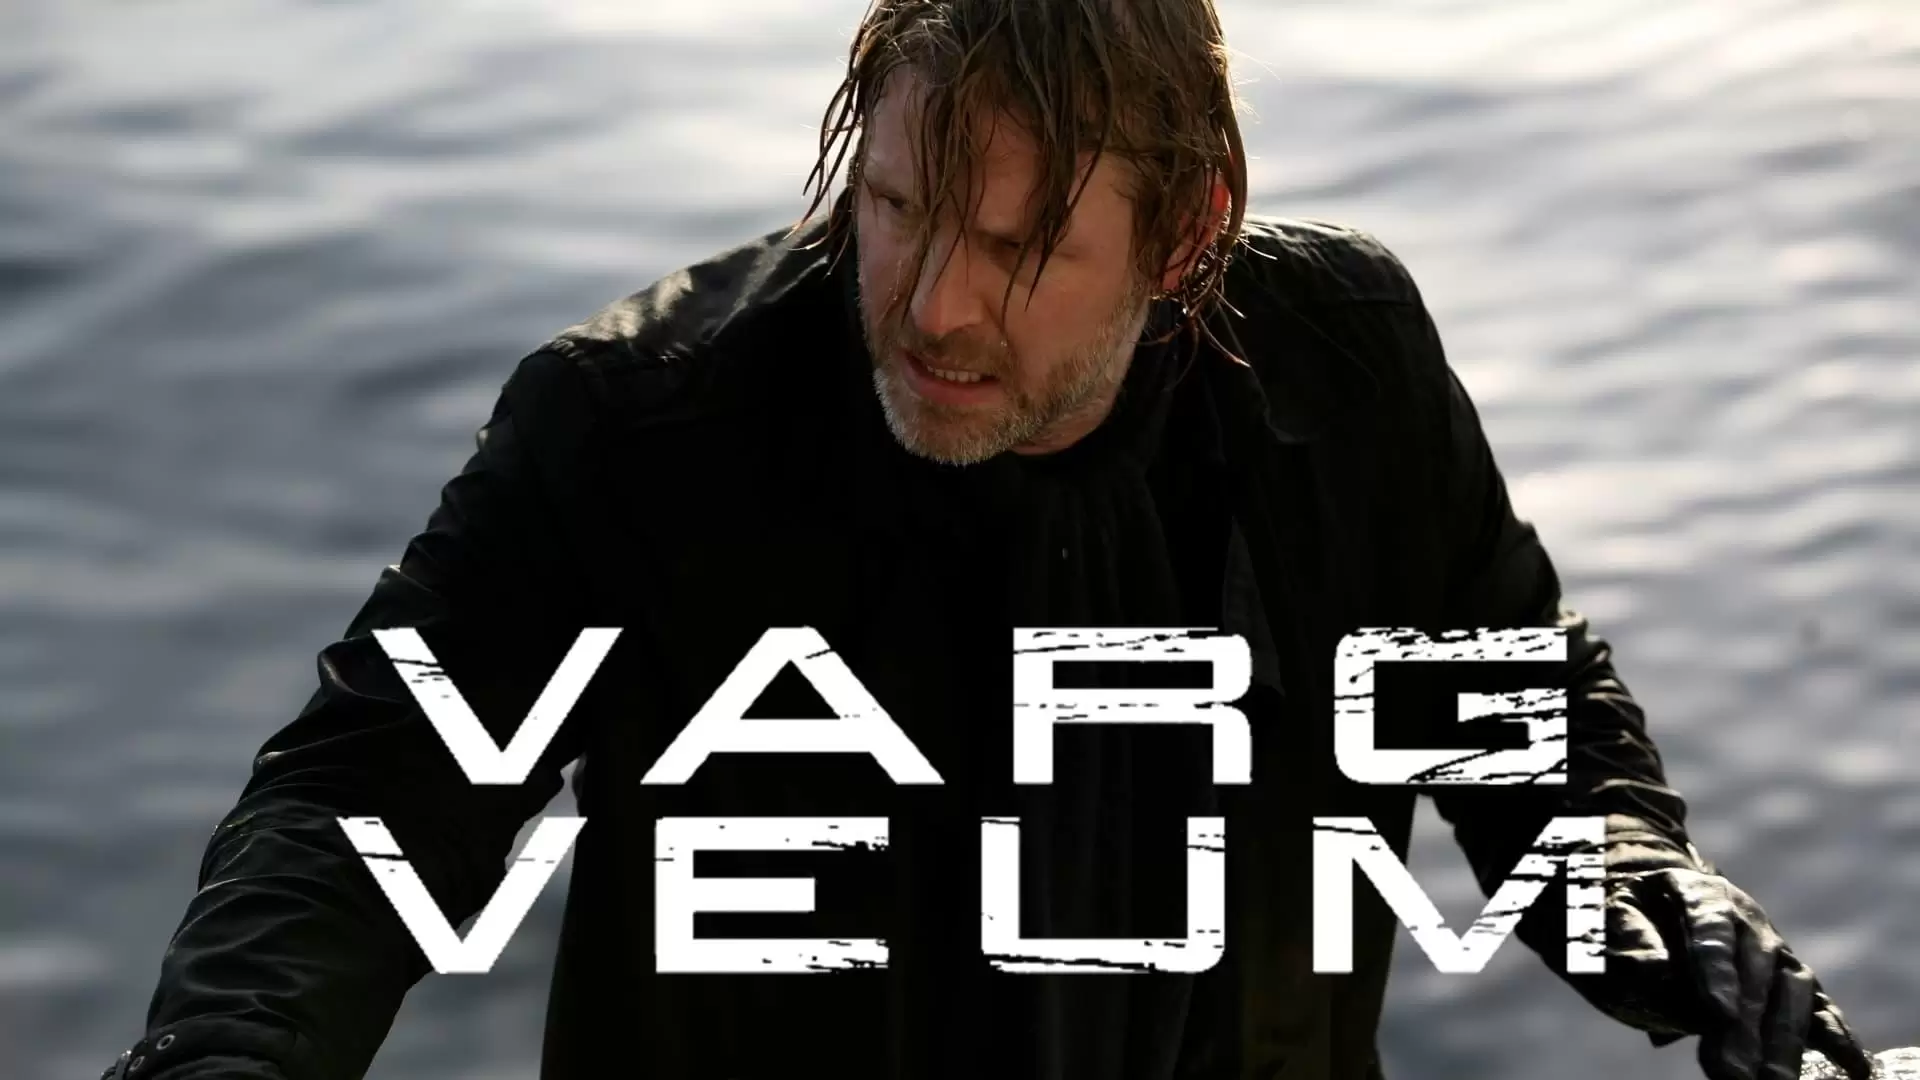 دانلود سریال Varg Veum 2007